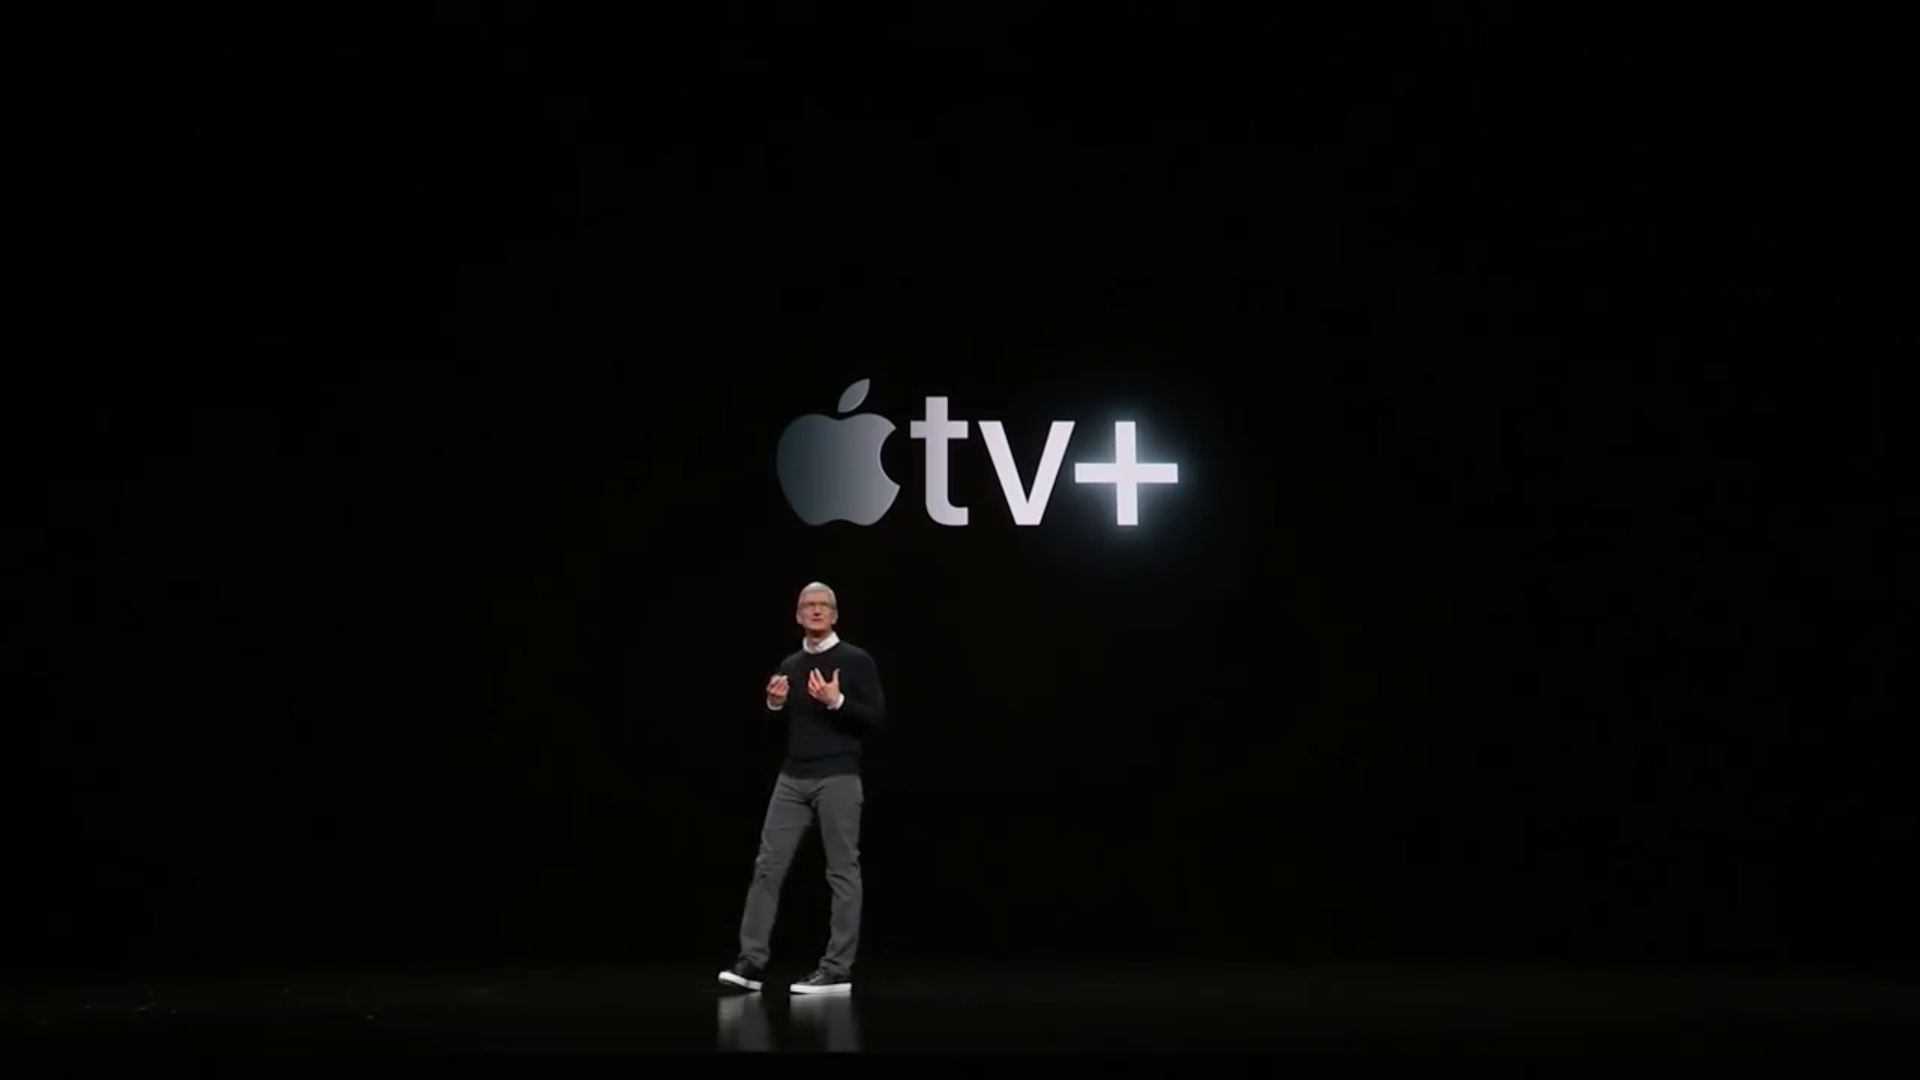 Uz Apple TV Channelse, uvodi se i Plus paket koji će sadržavati Appleov originalni video sadržaj. Dakle, Apple TV Plus bi se najlakše mogao opisati kao konkurent Netflixu i ostalim streaming servisima. Nažalost, iz Applea su bili veoma šturi oko detalja o ovom streaming servisu. Dostupan će biti tijekom jeseni, a sadržaj će se moći gledati online i offline. O cijeni, zasad nisu rekli ništa.